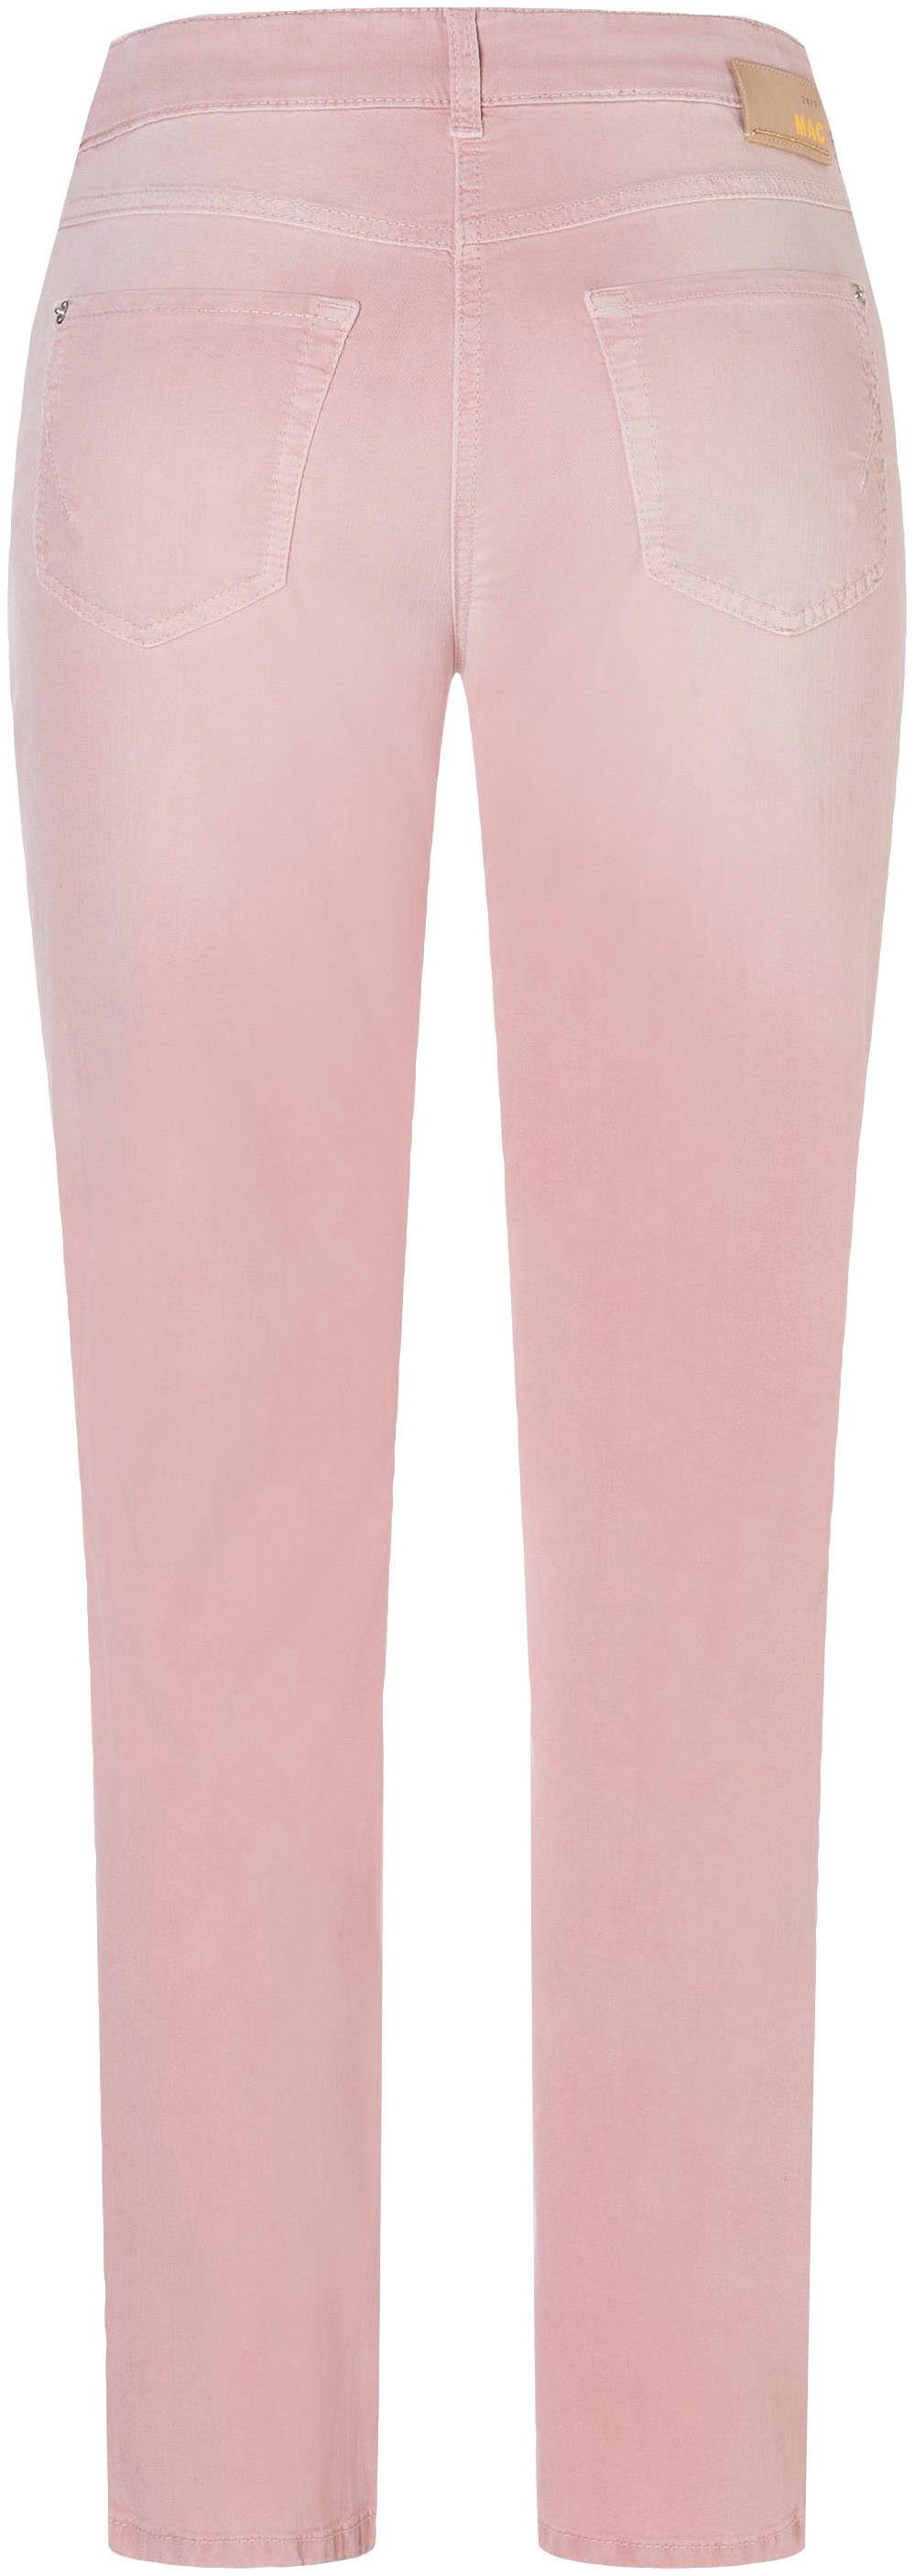 rose geschnitten MAC Stretch-Jeans Angela Schmal light